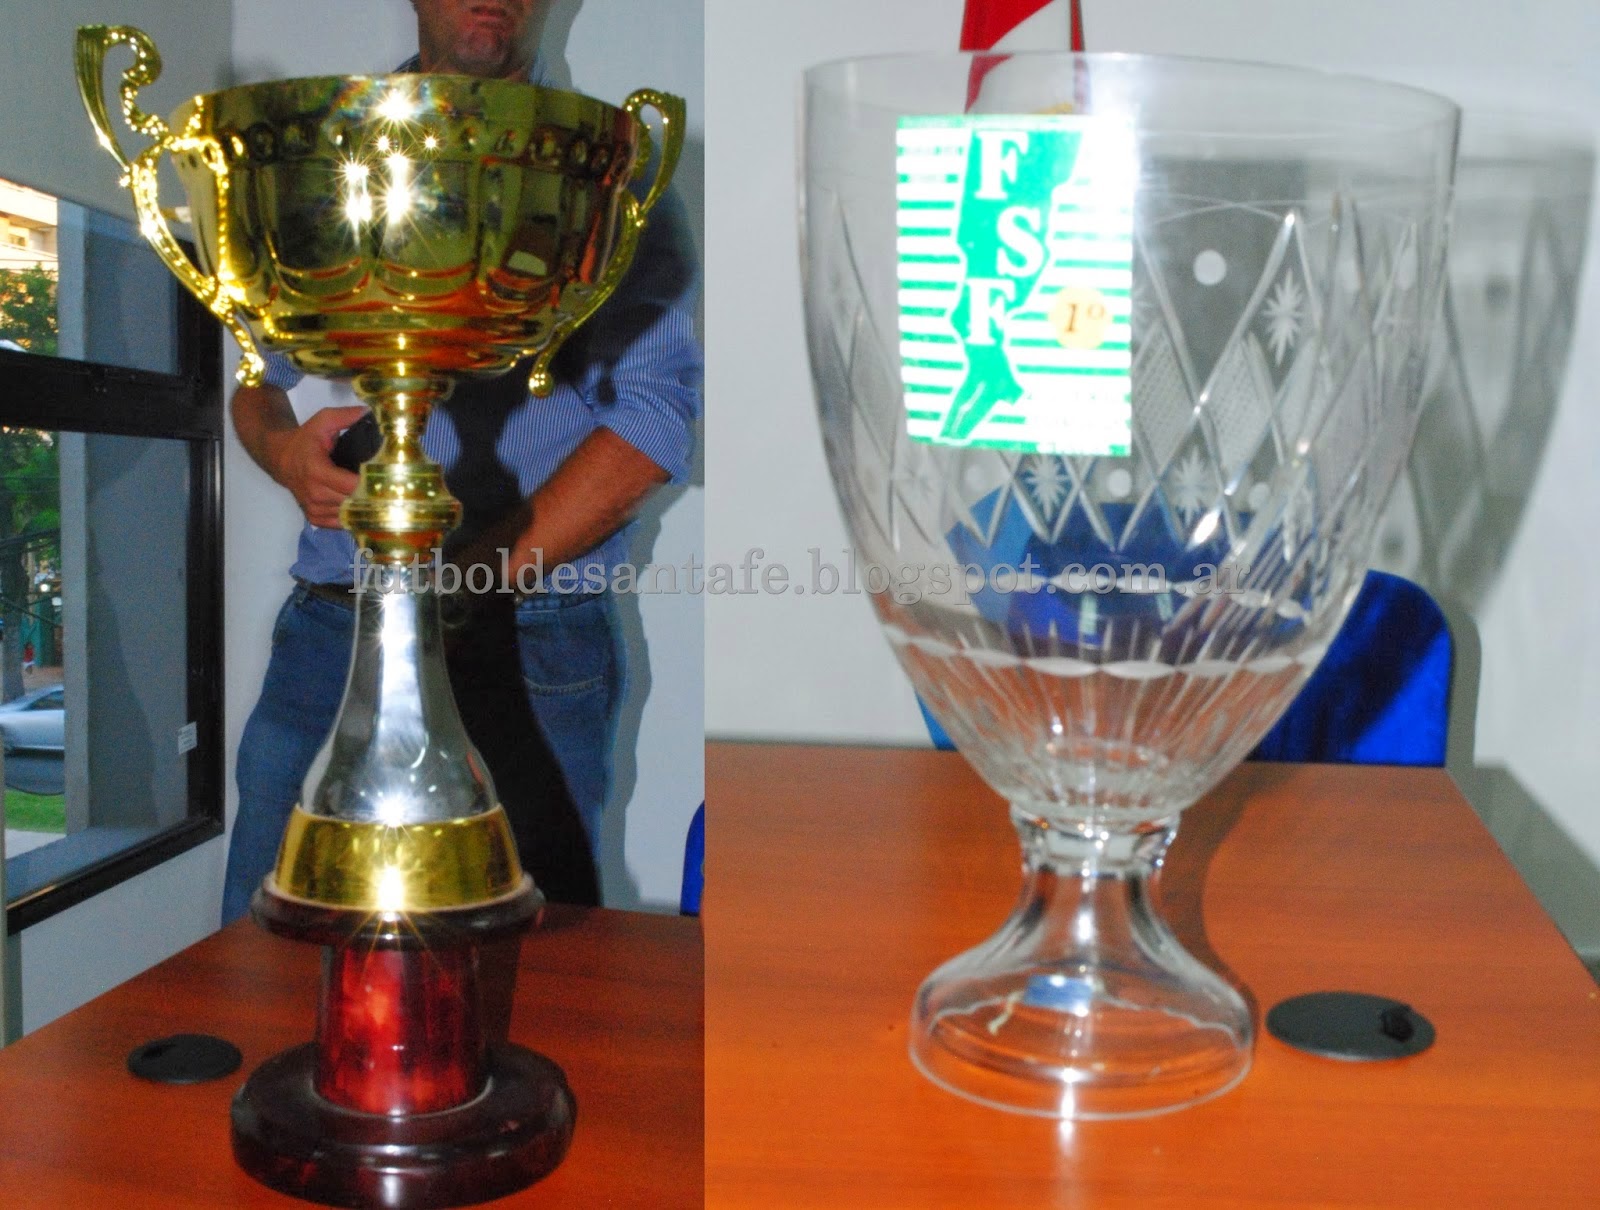 Foto de archivo de los trofeos entregados en ediciones anteriores de la Copa. Foto: Julián Andrés Monzón